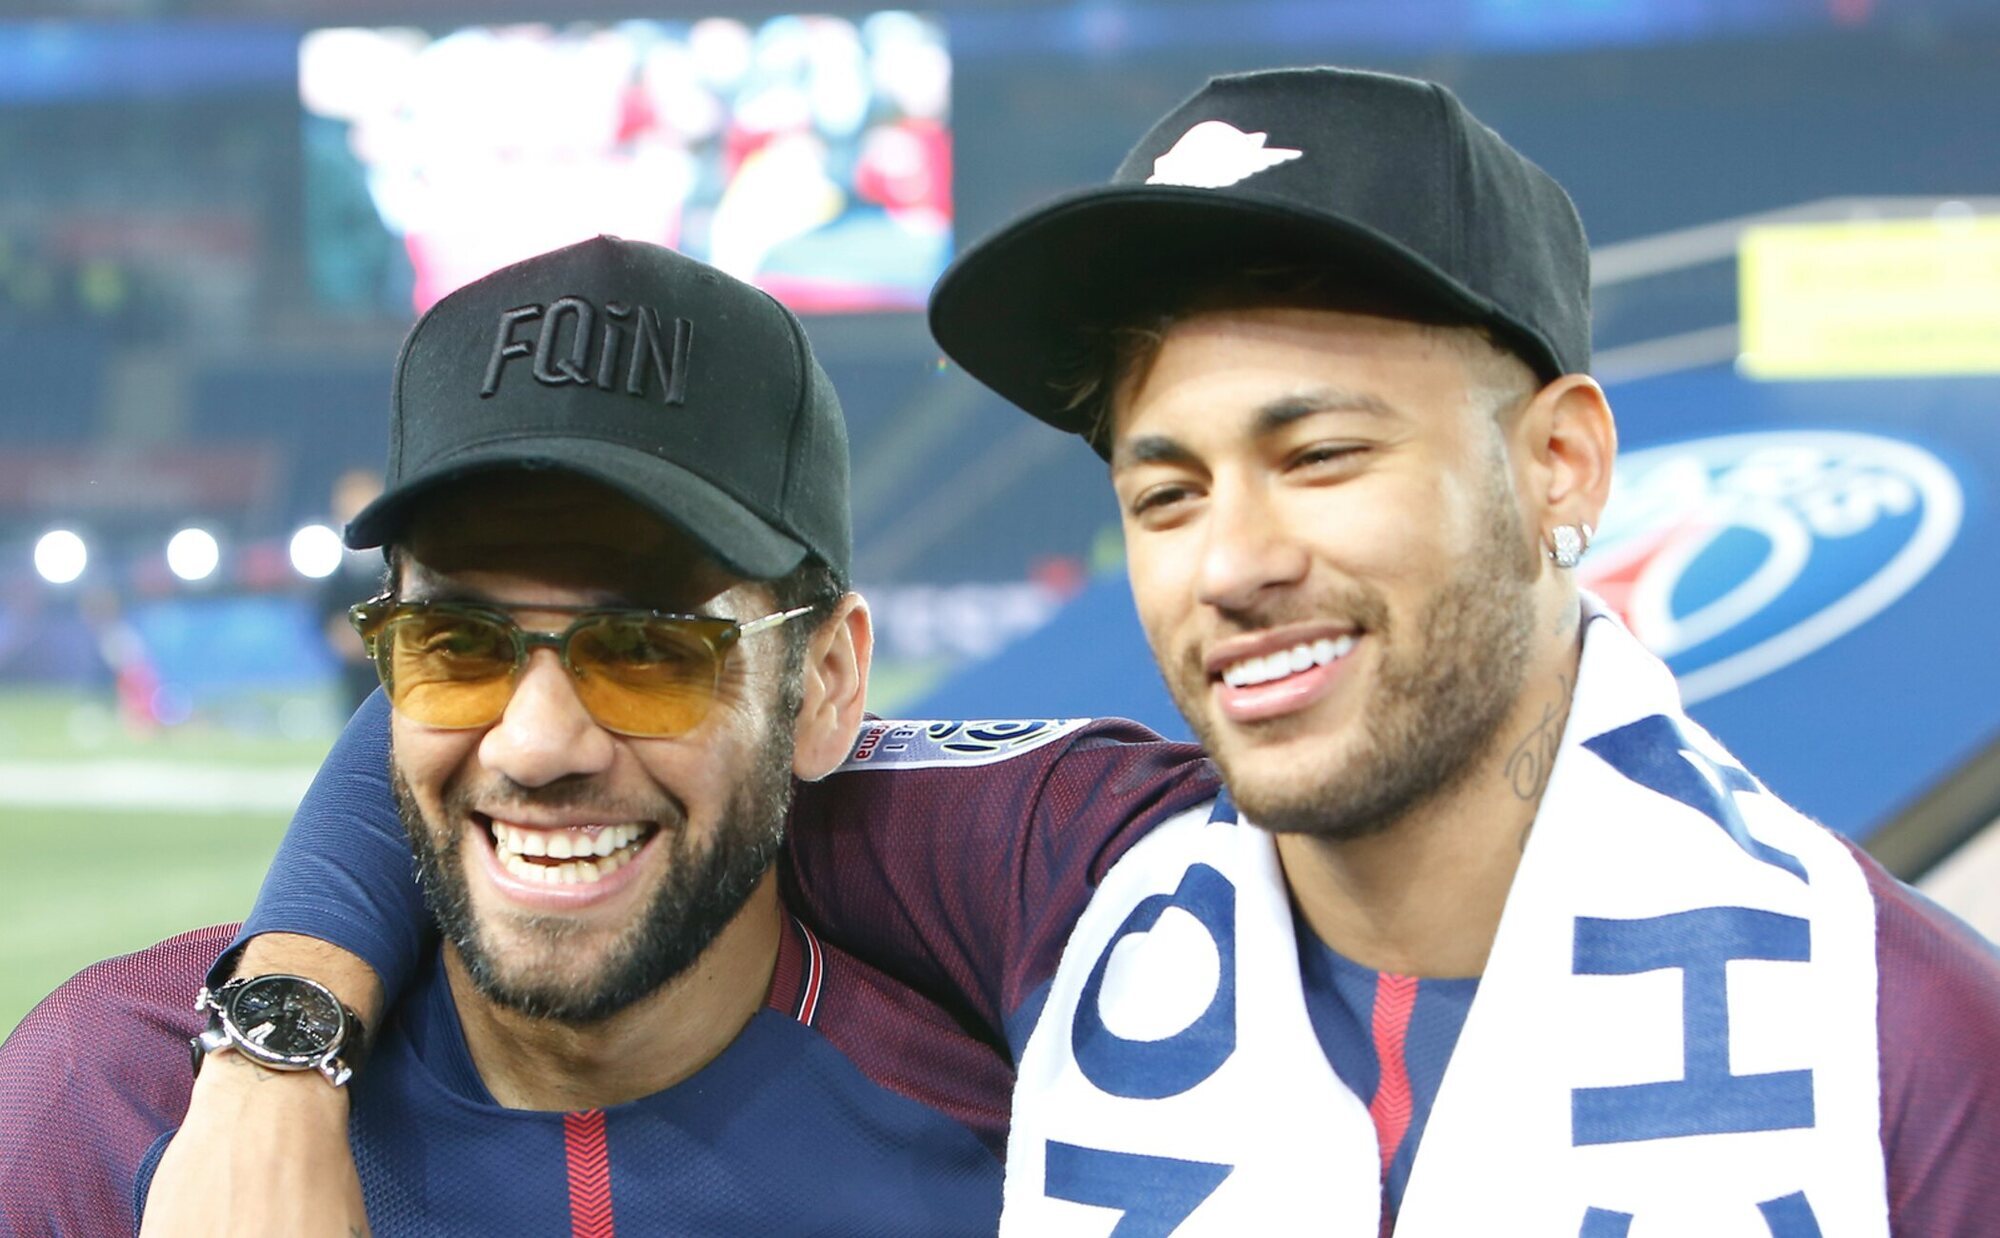 Dani Alves devuelve al padre de Neymar los 150.000 euros que le había dado para indemnizar a la víctima